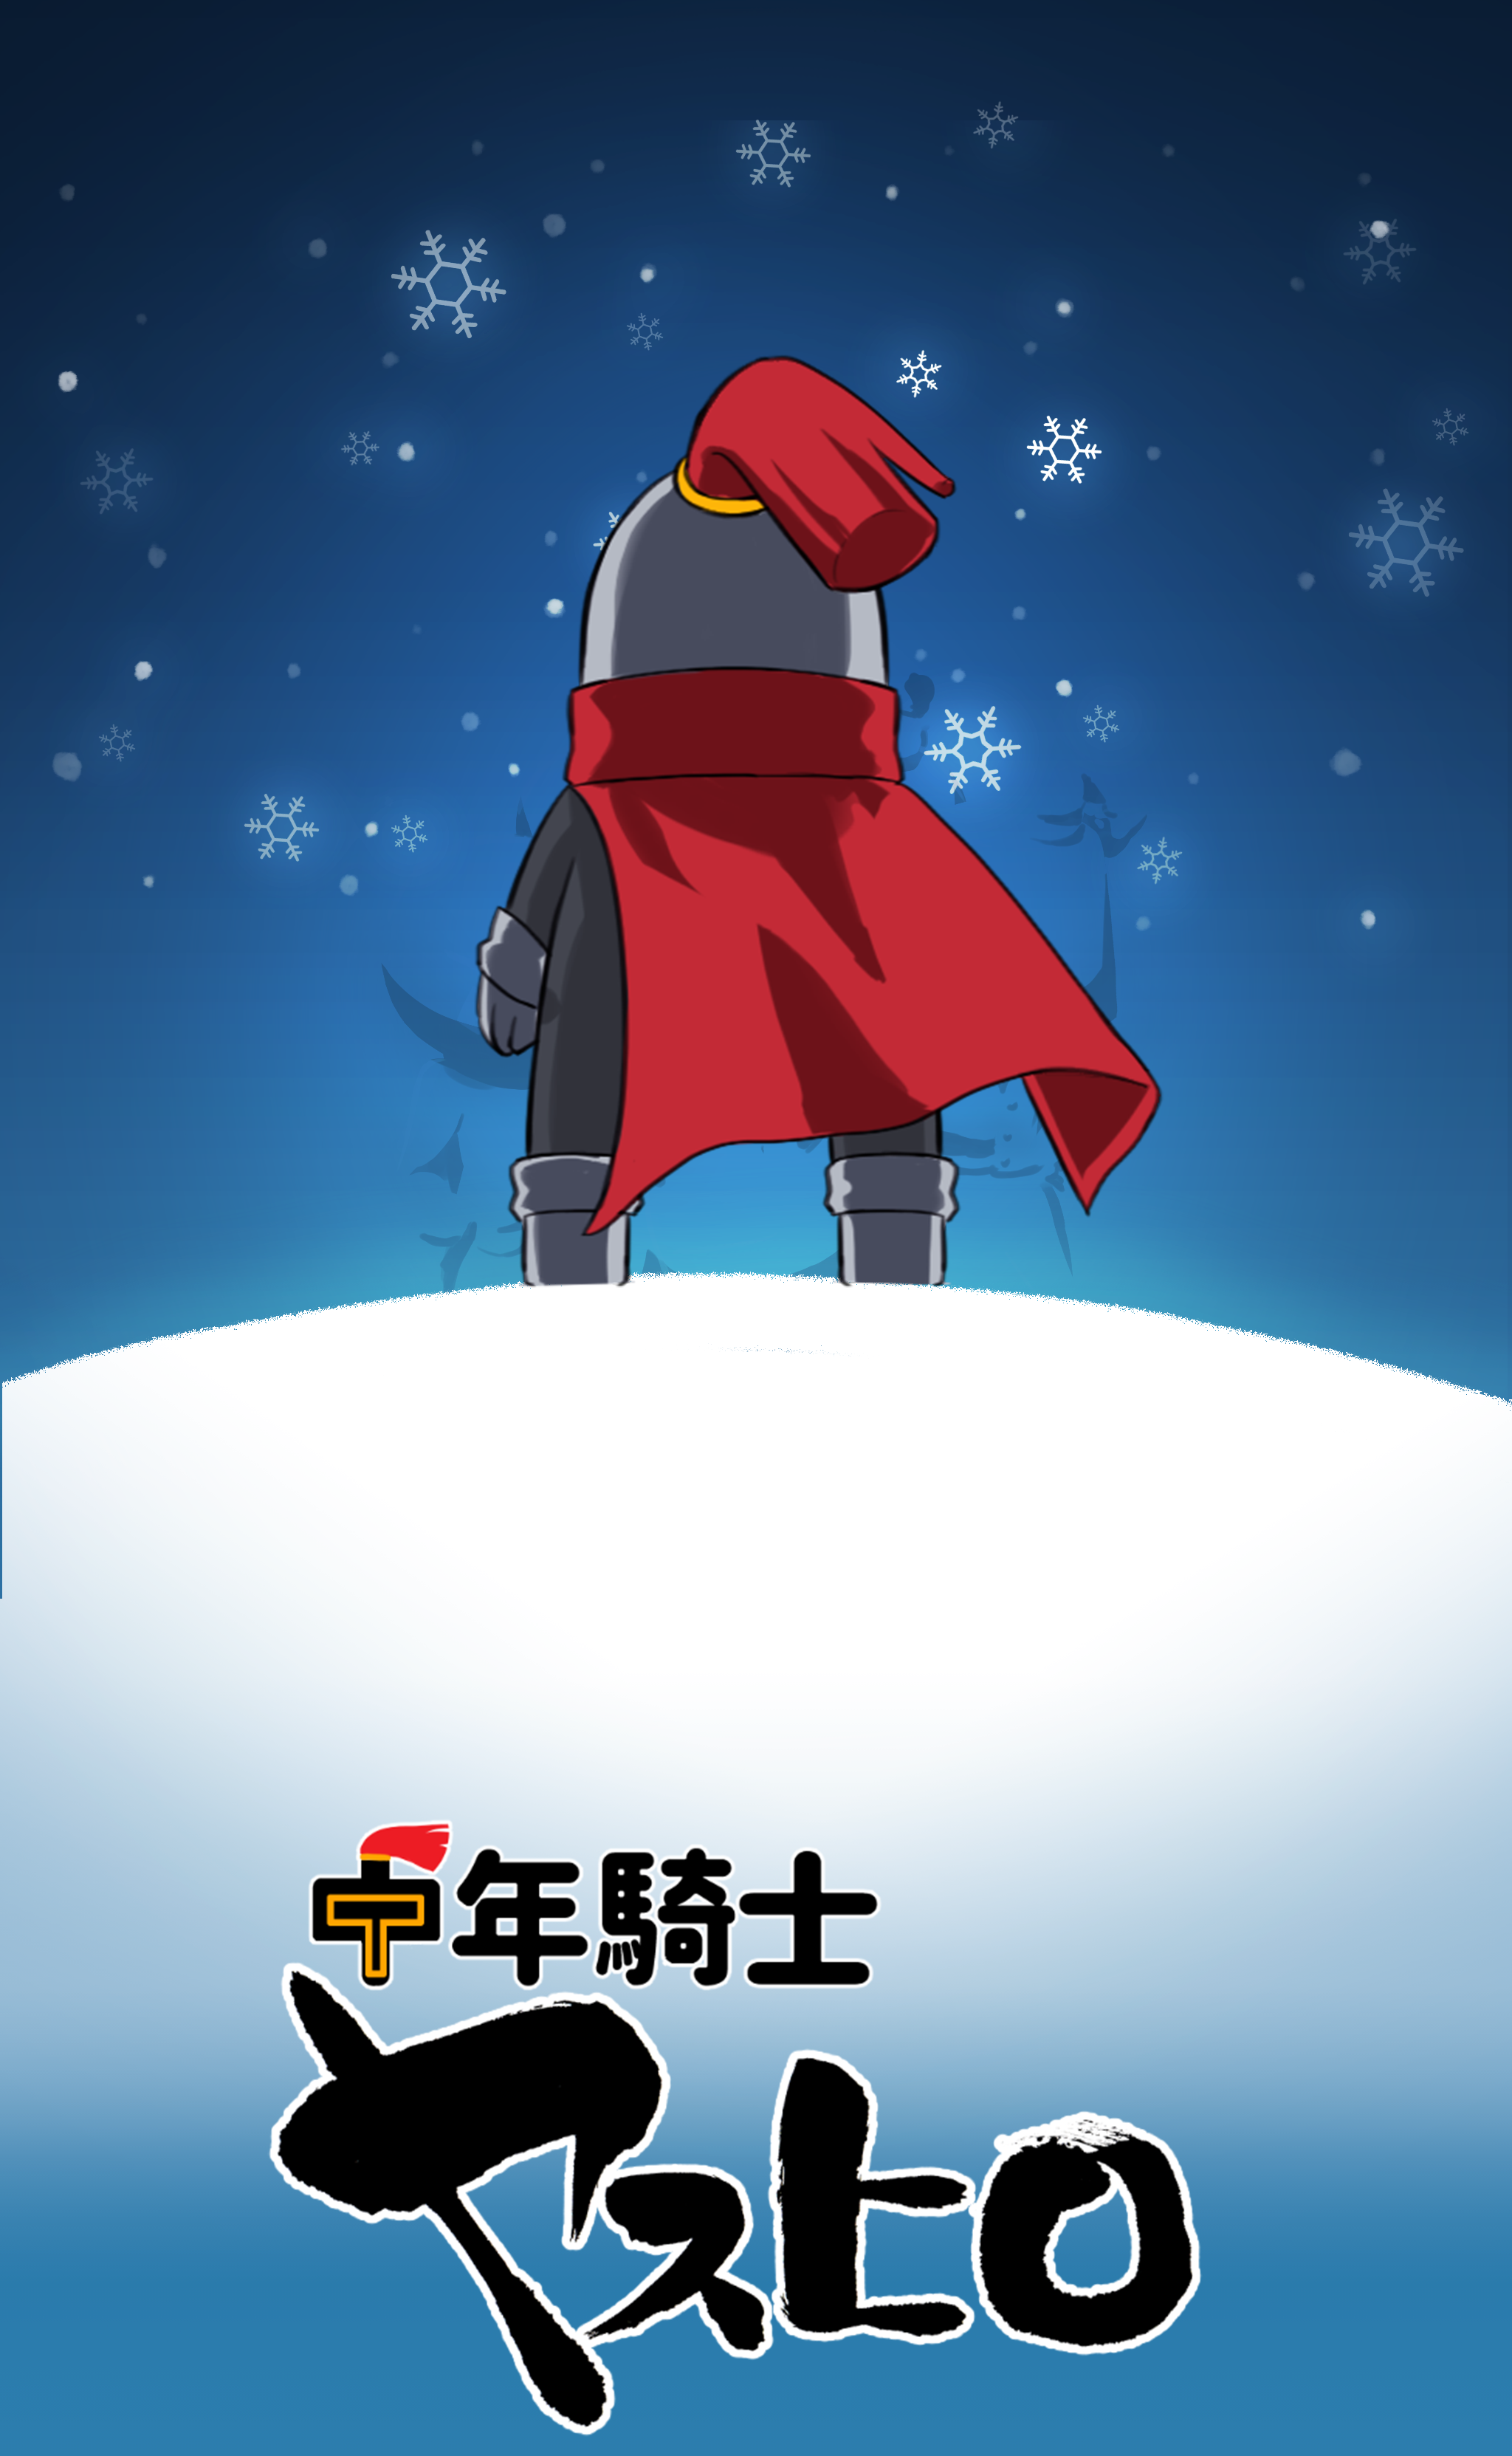 Screenshot 1 of Hiệp sĩ trung niên Yasuhiro - Chú trở thành anh hùng - Pixel Art RPG miễn phí 6.0.0